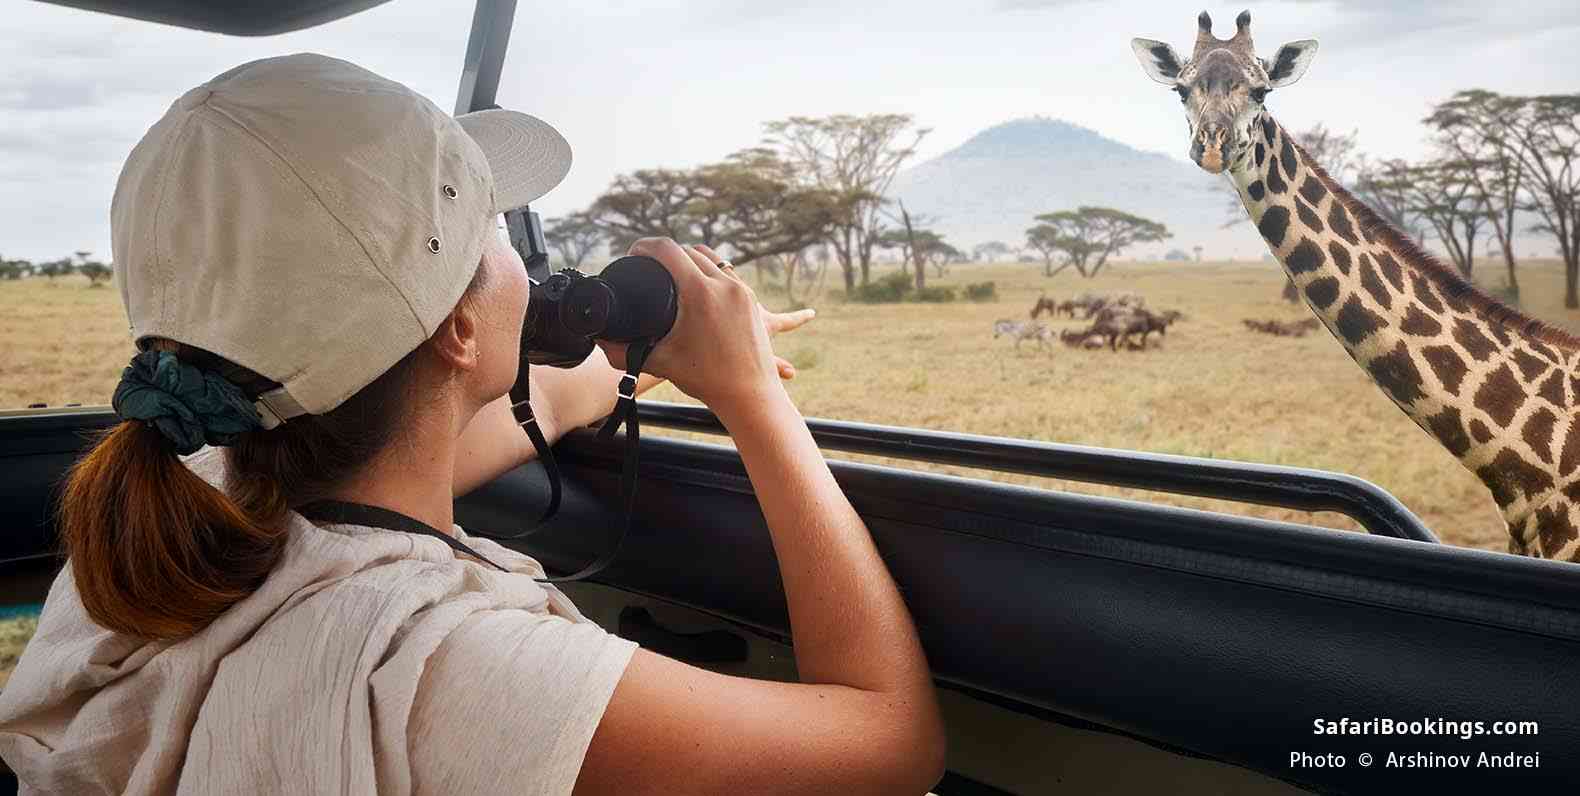 Woman on safari watching a giraffe at Serengeti NP